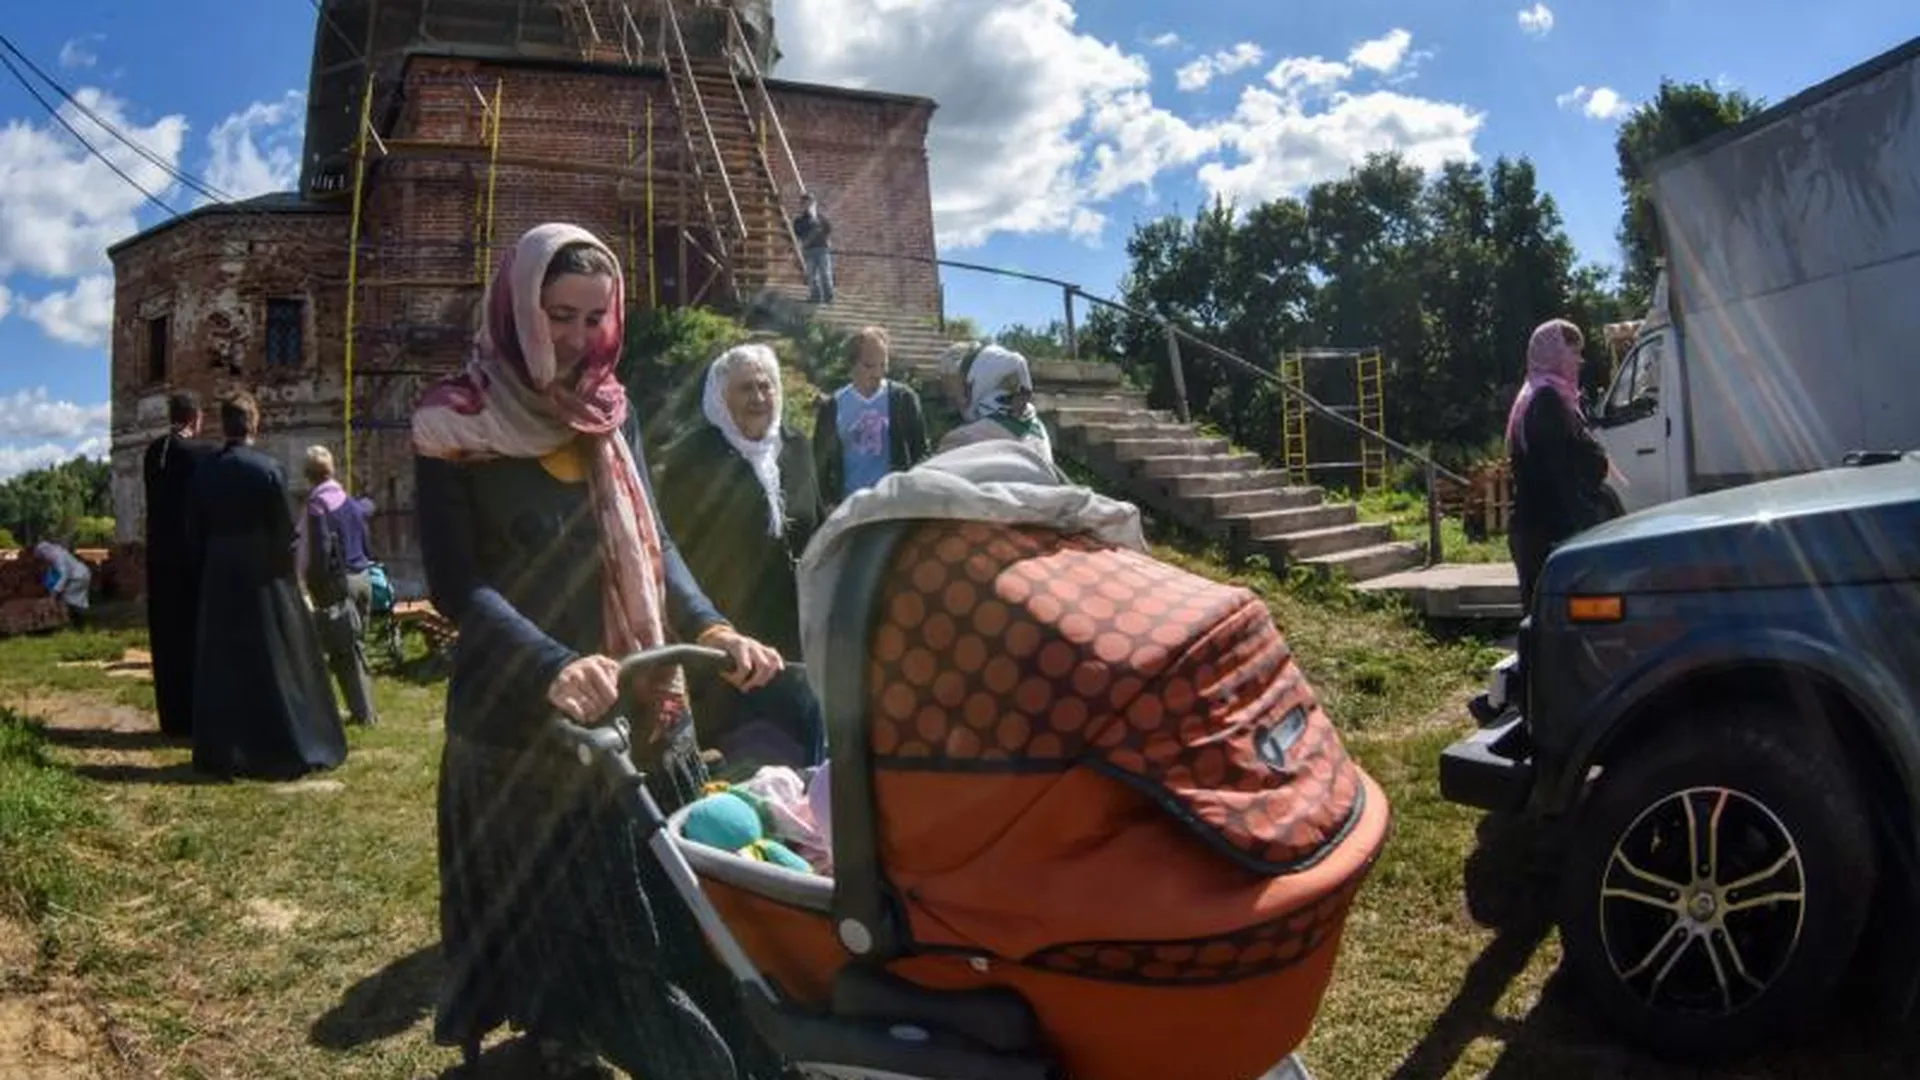 253 православных церкви ждут реставраторов в Подмосковье